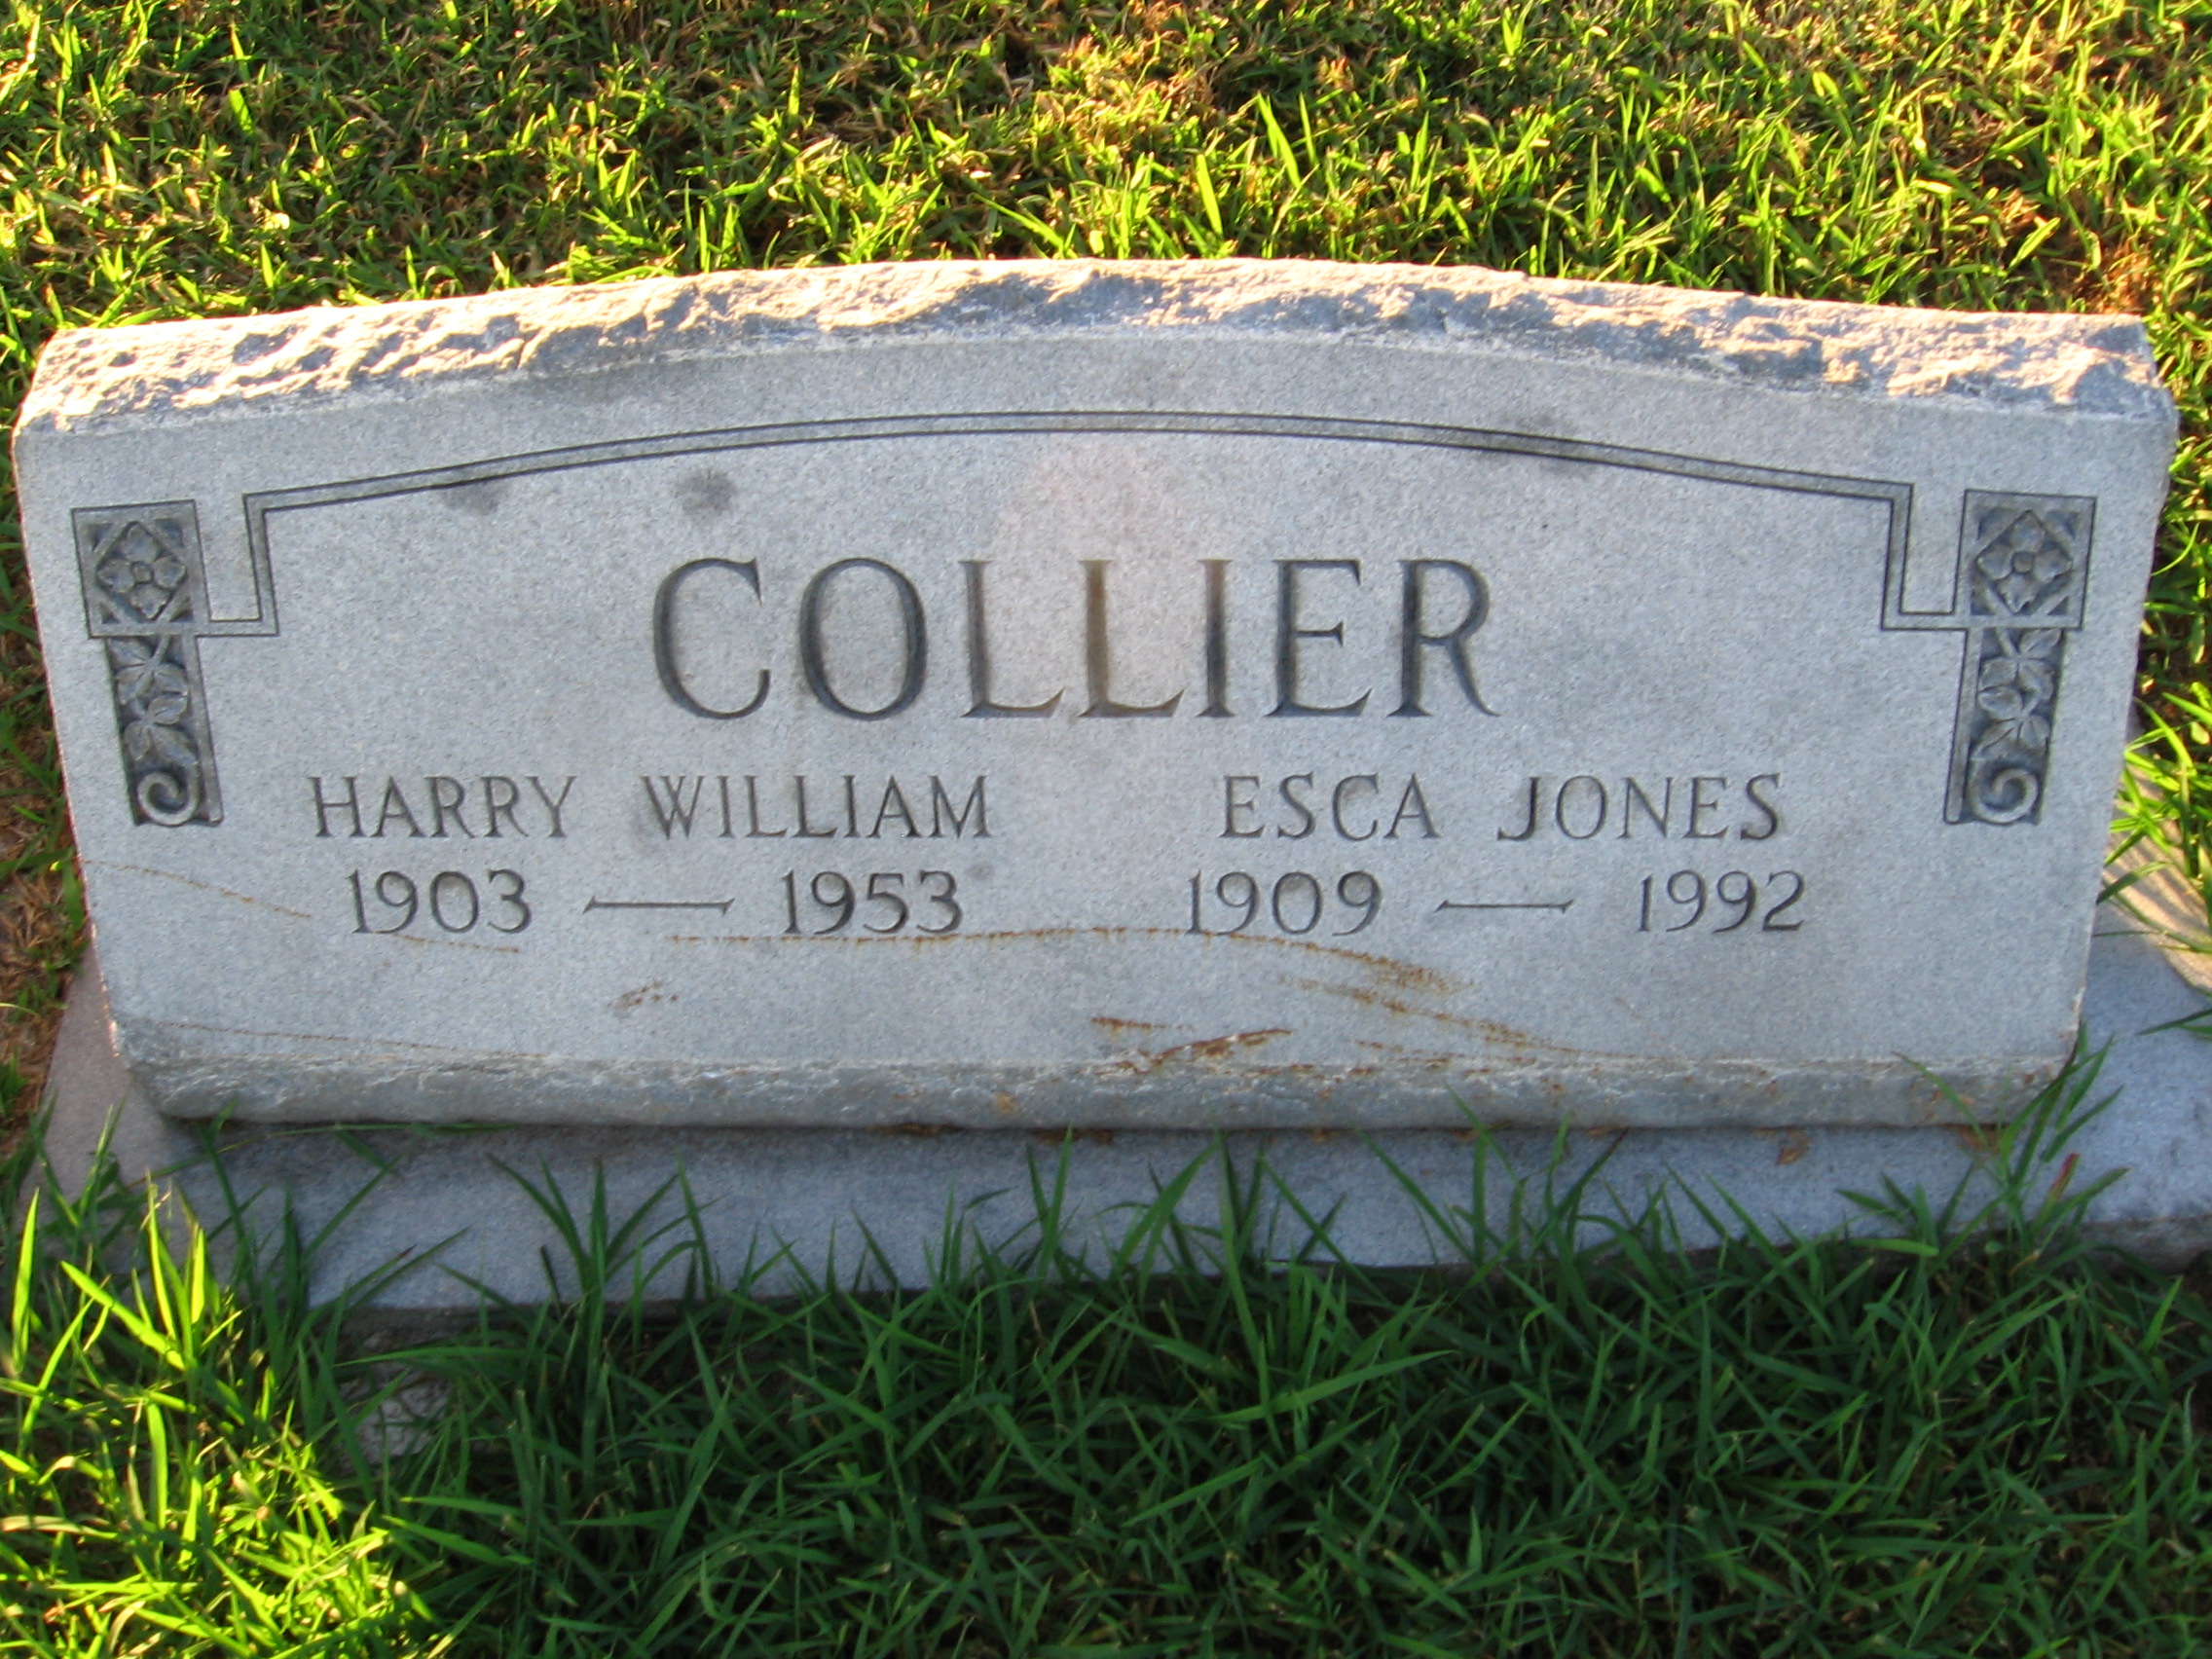 Harry William Collier